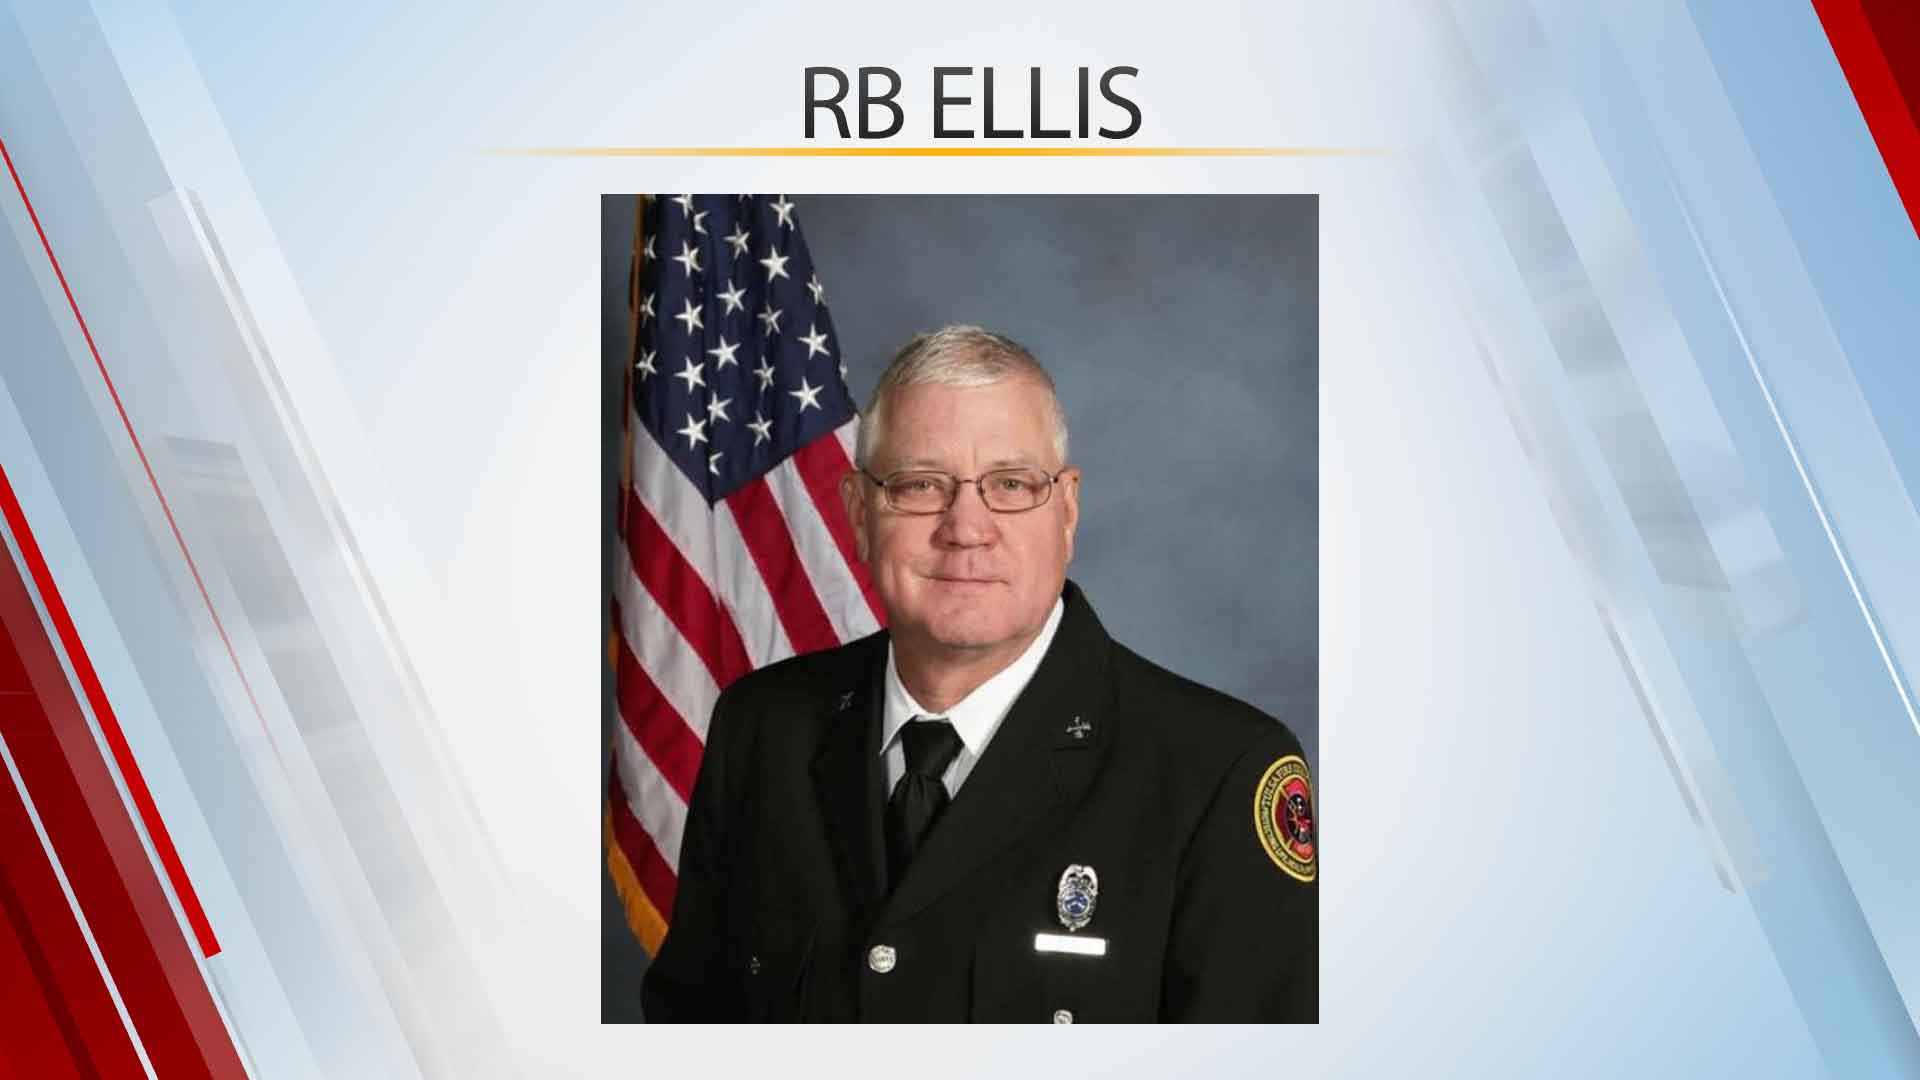 Tulsa Fire Dept. Health & Safety Chief Dies